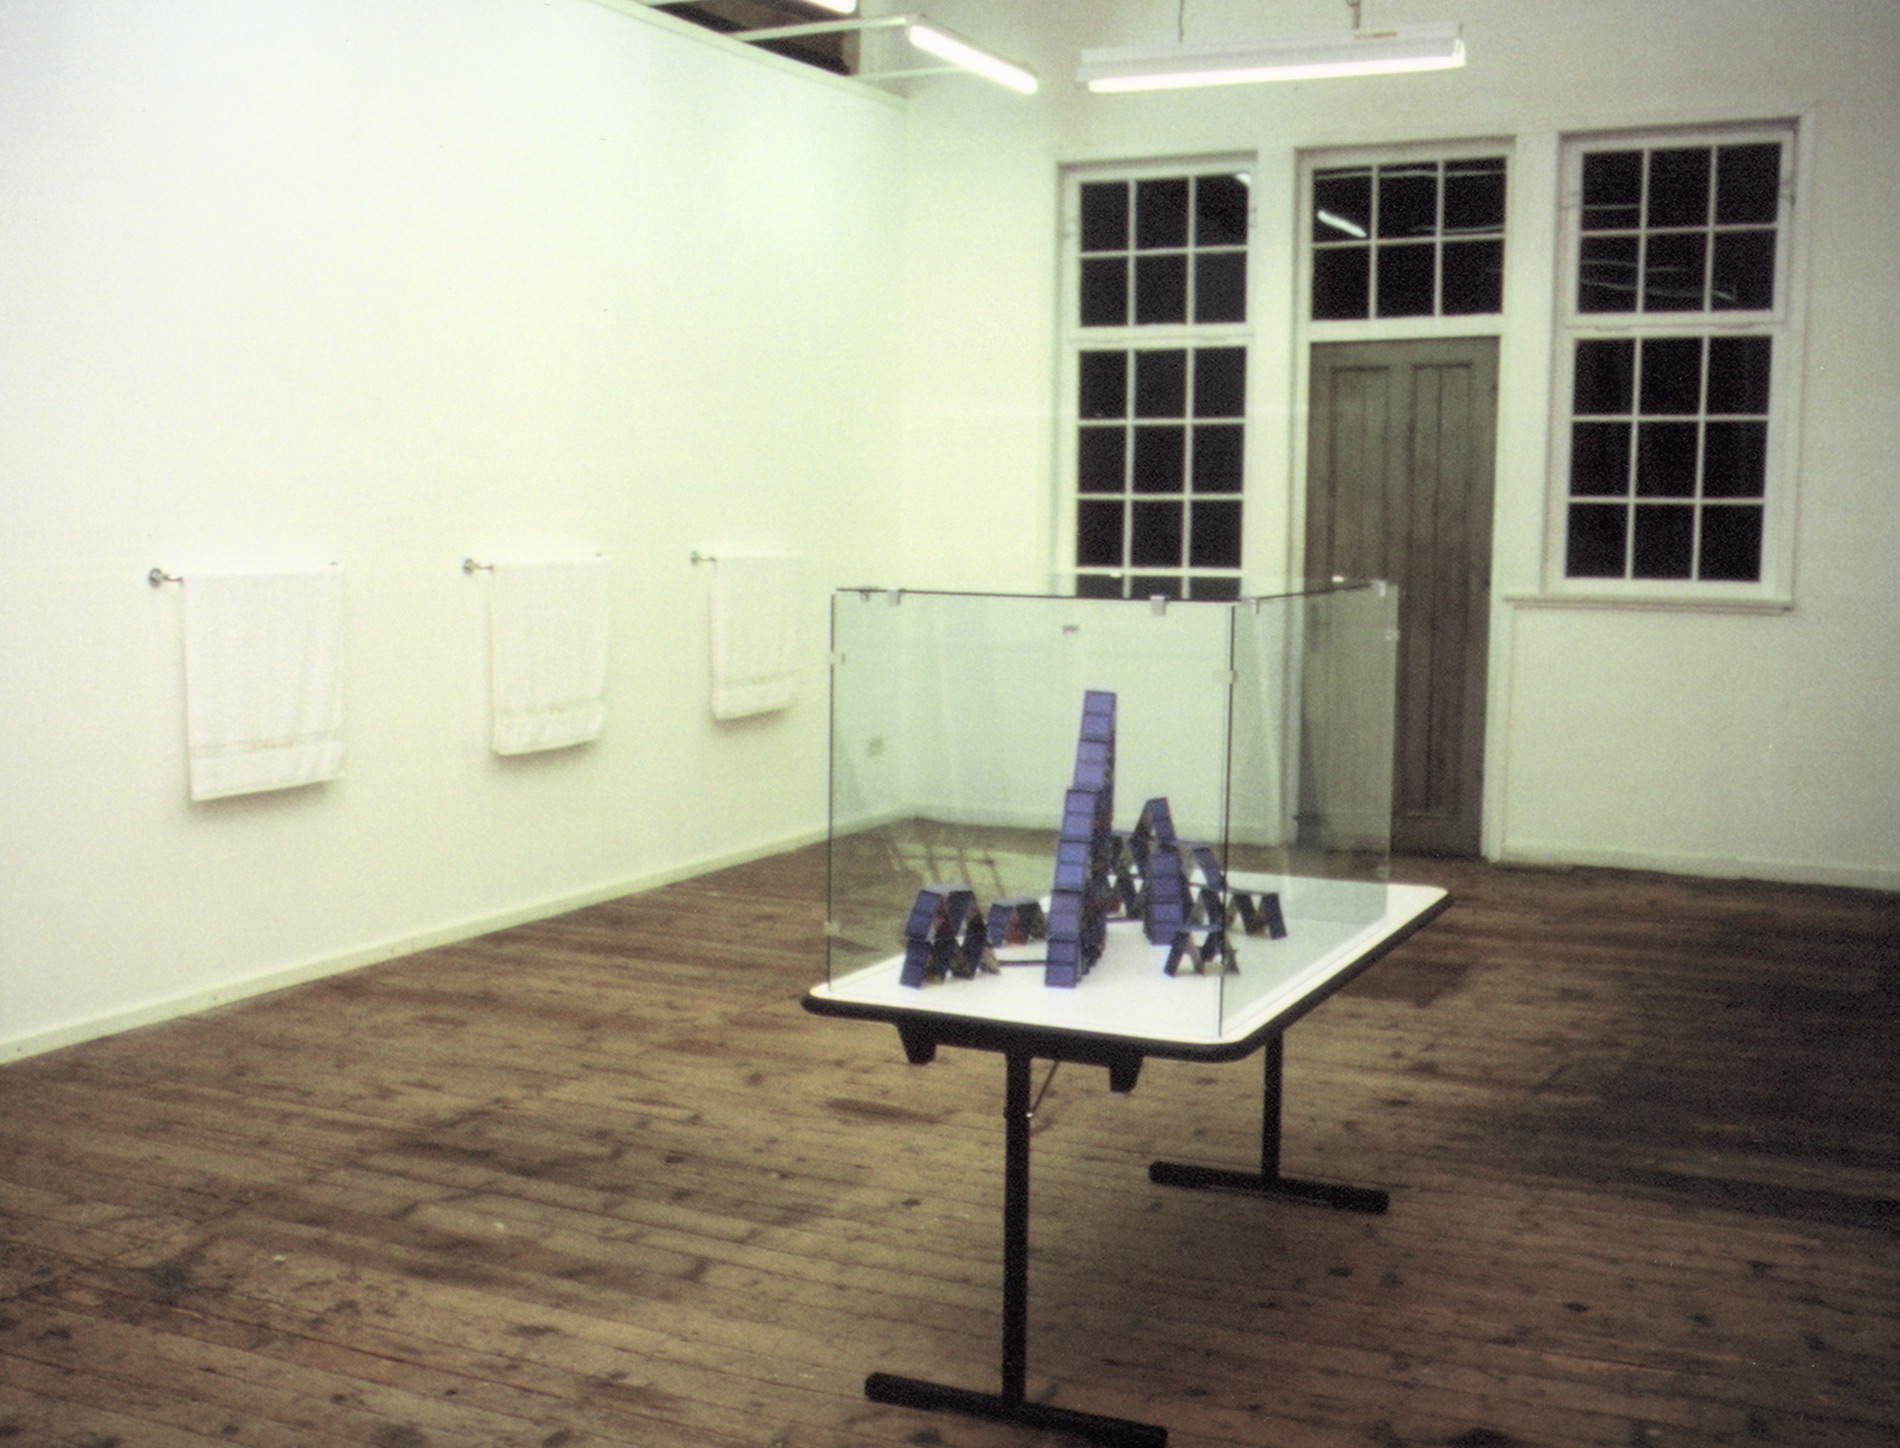 Michael Göbel - Ausstellung "Himmel - Selbstportäts mit anderen", 2002